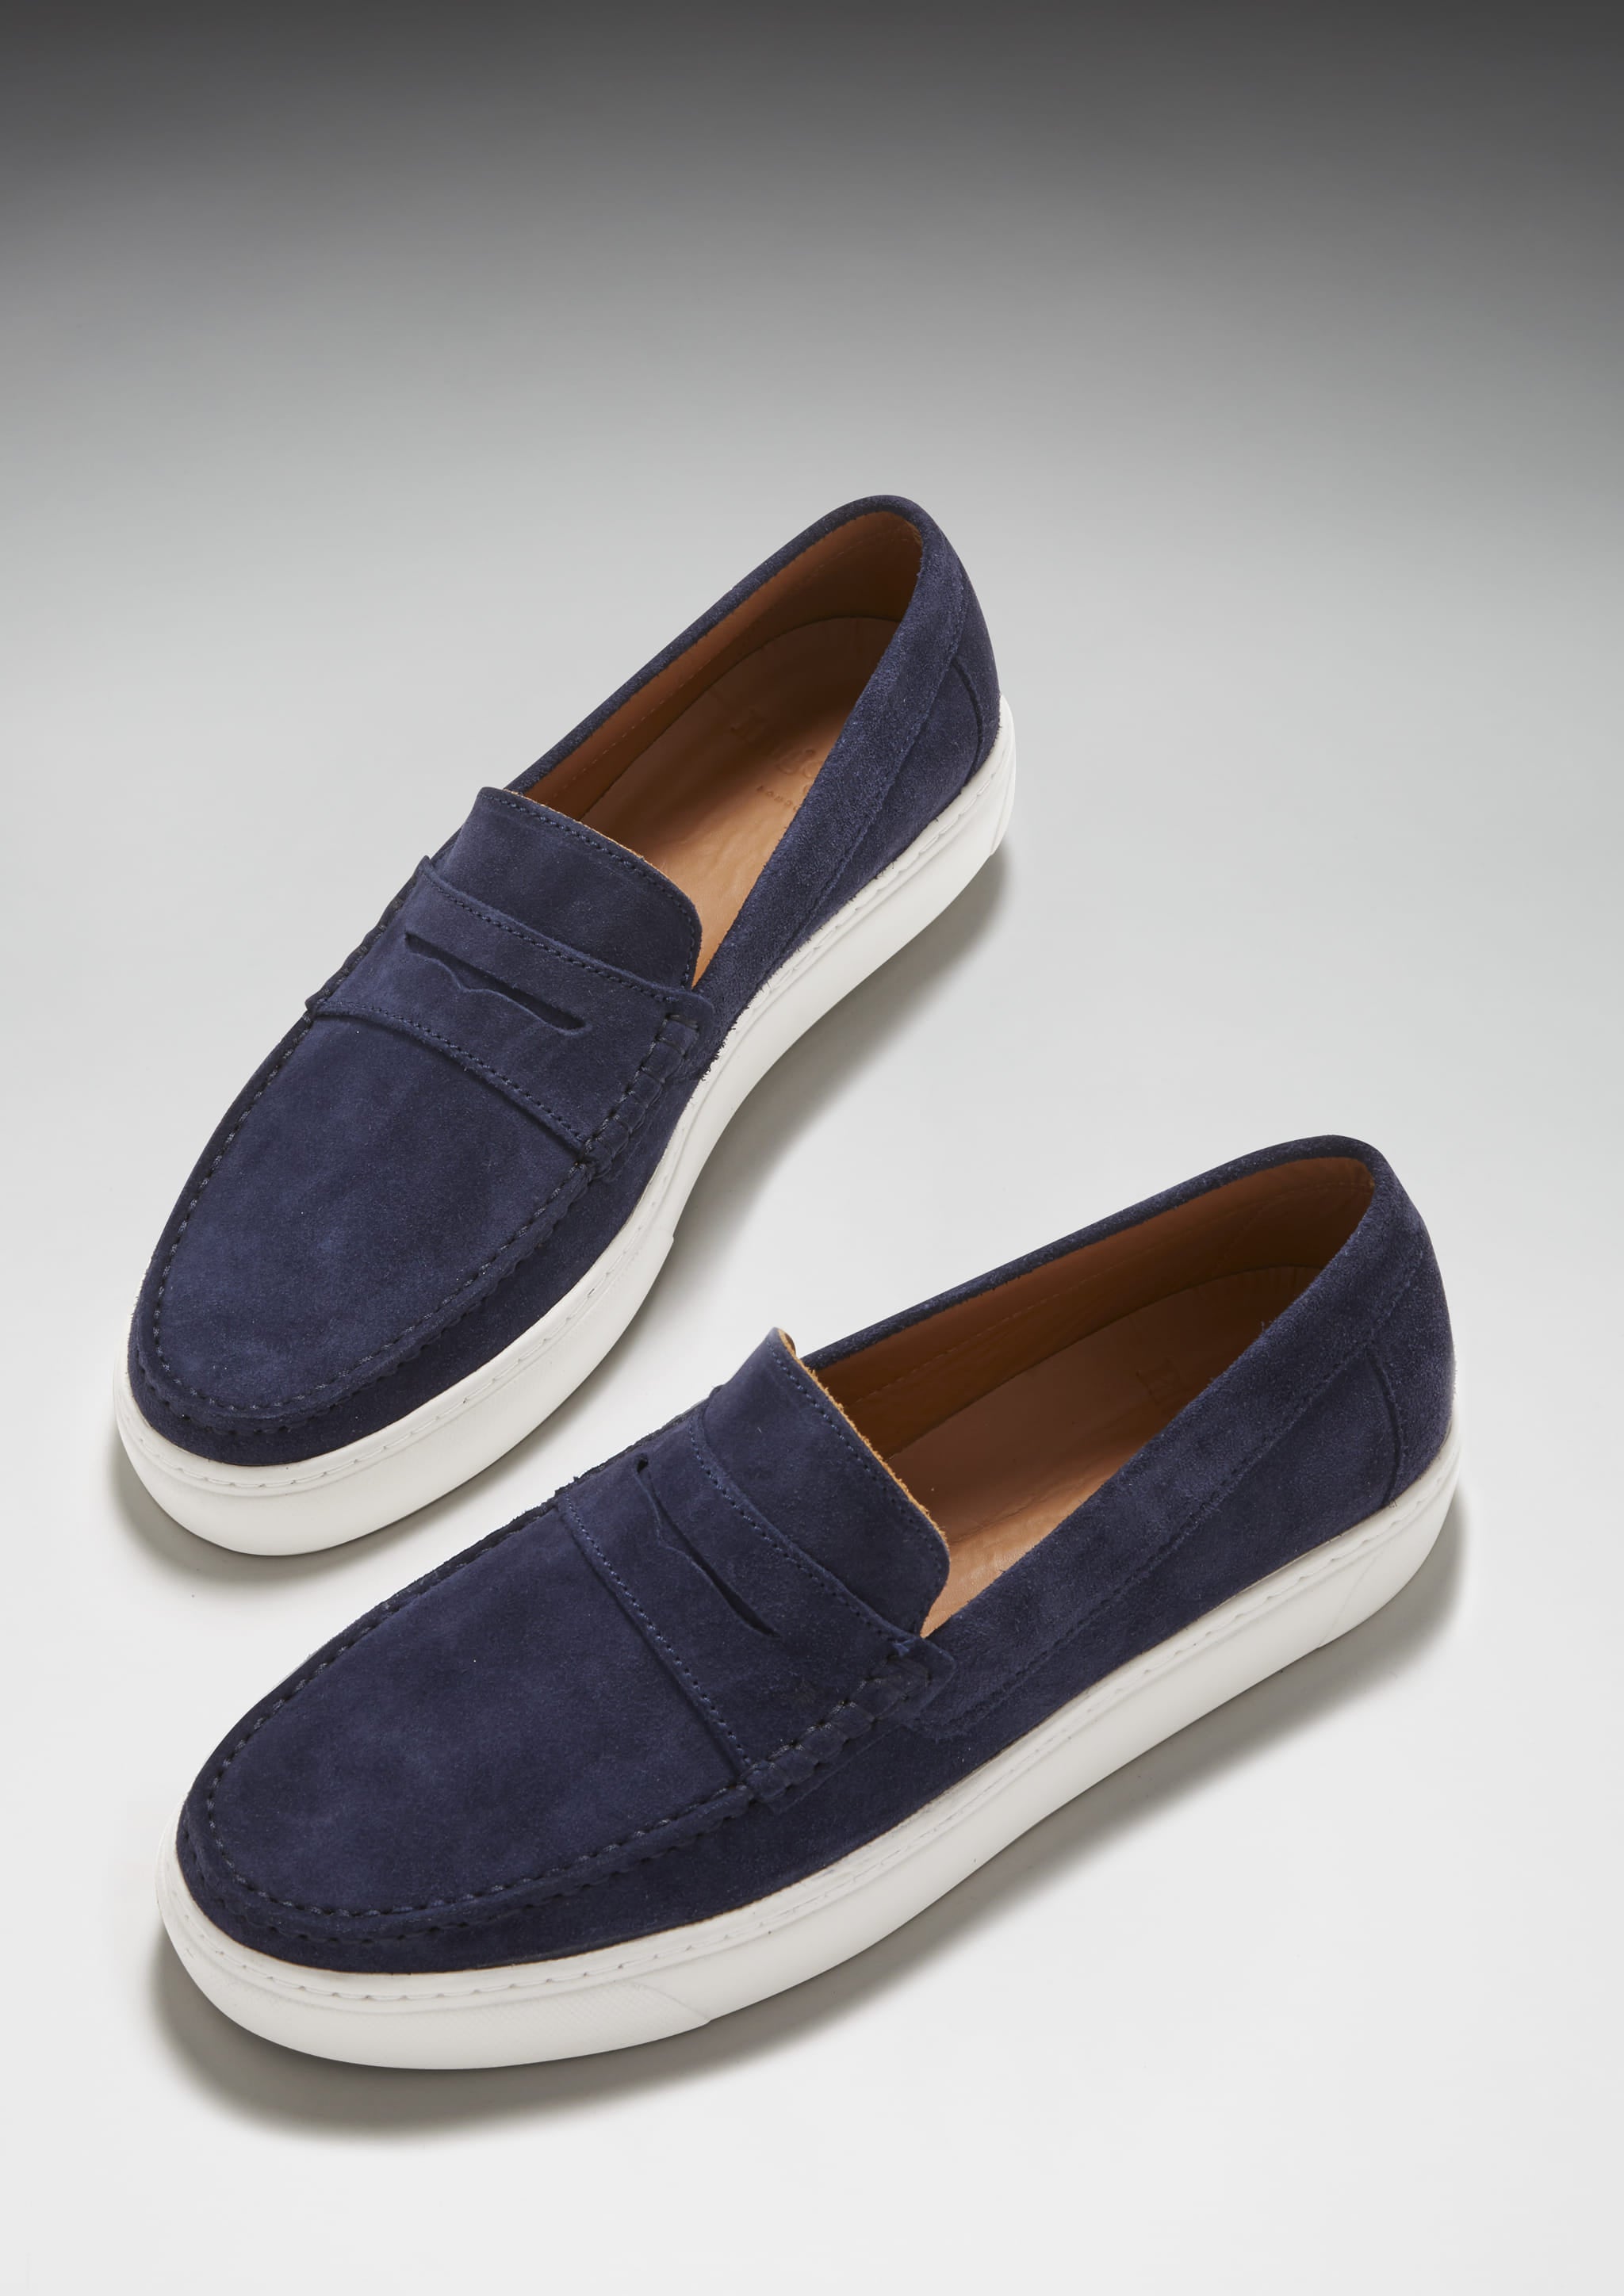 Slip-on Sneaker Loafers, navy blue suede - Hugs & Co.